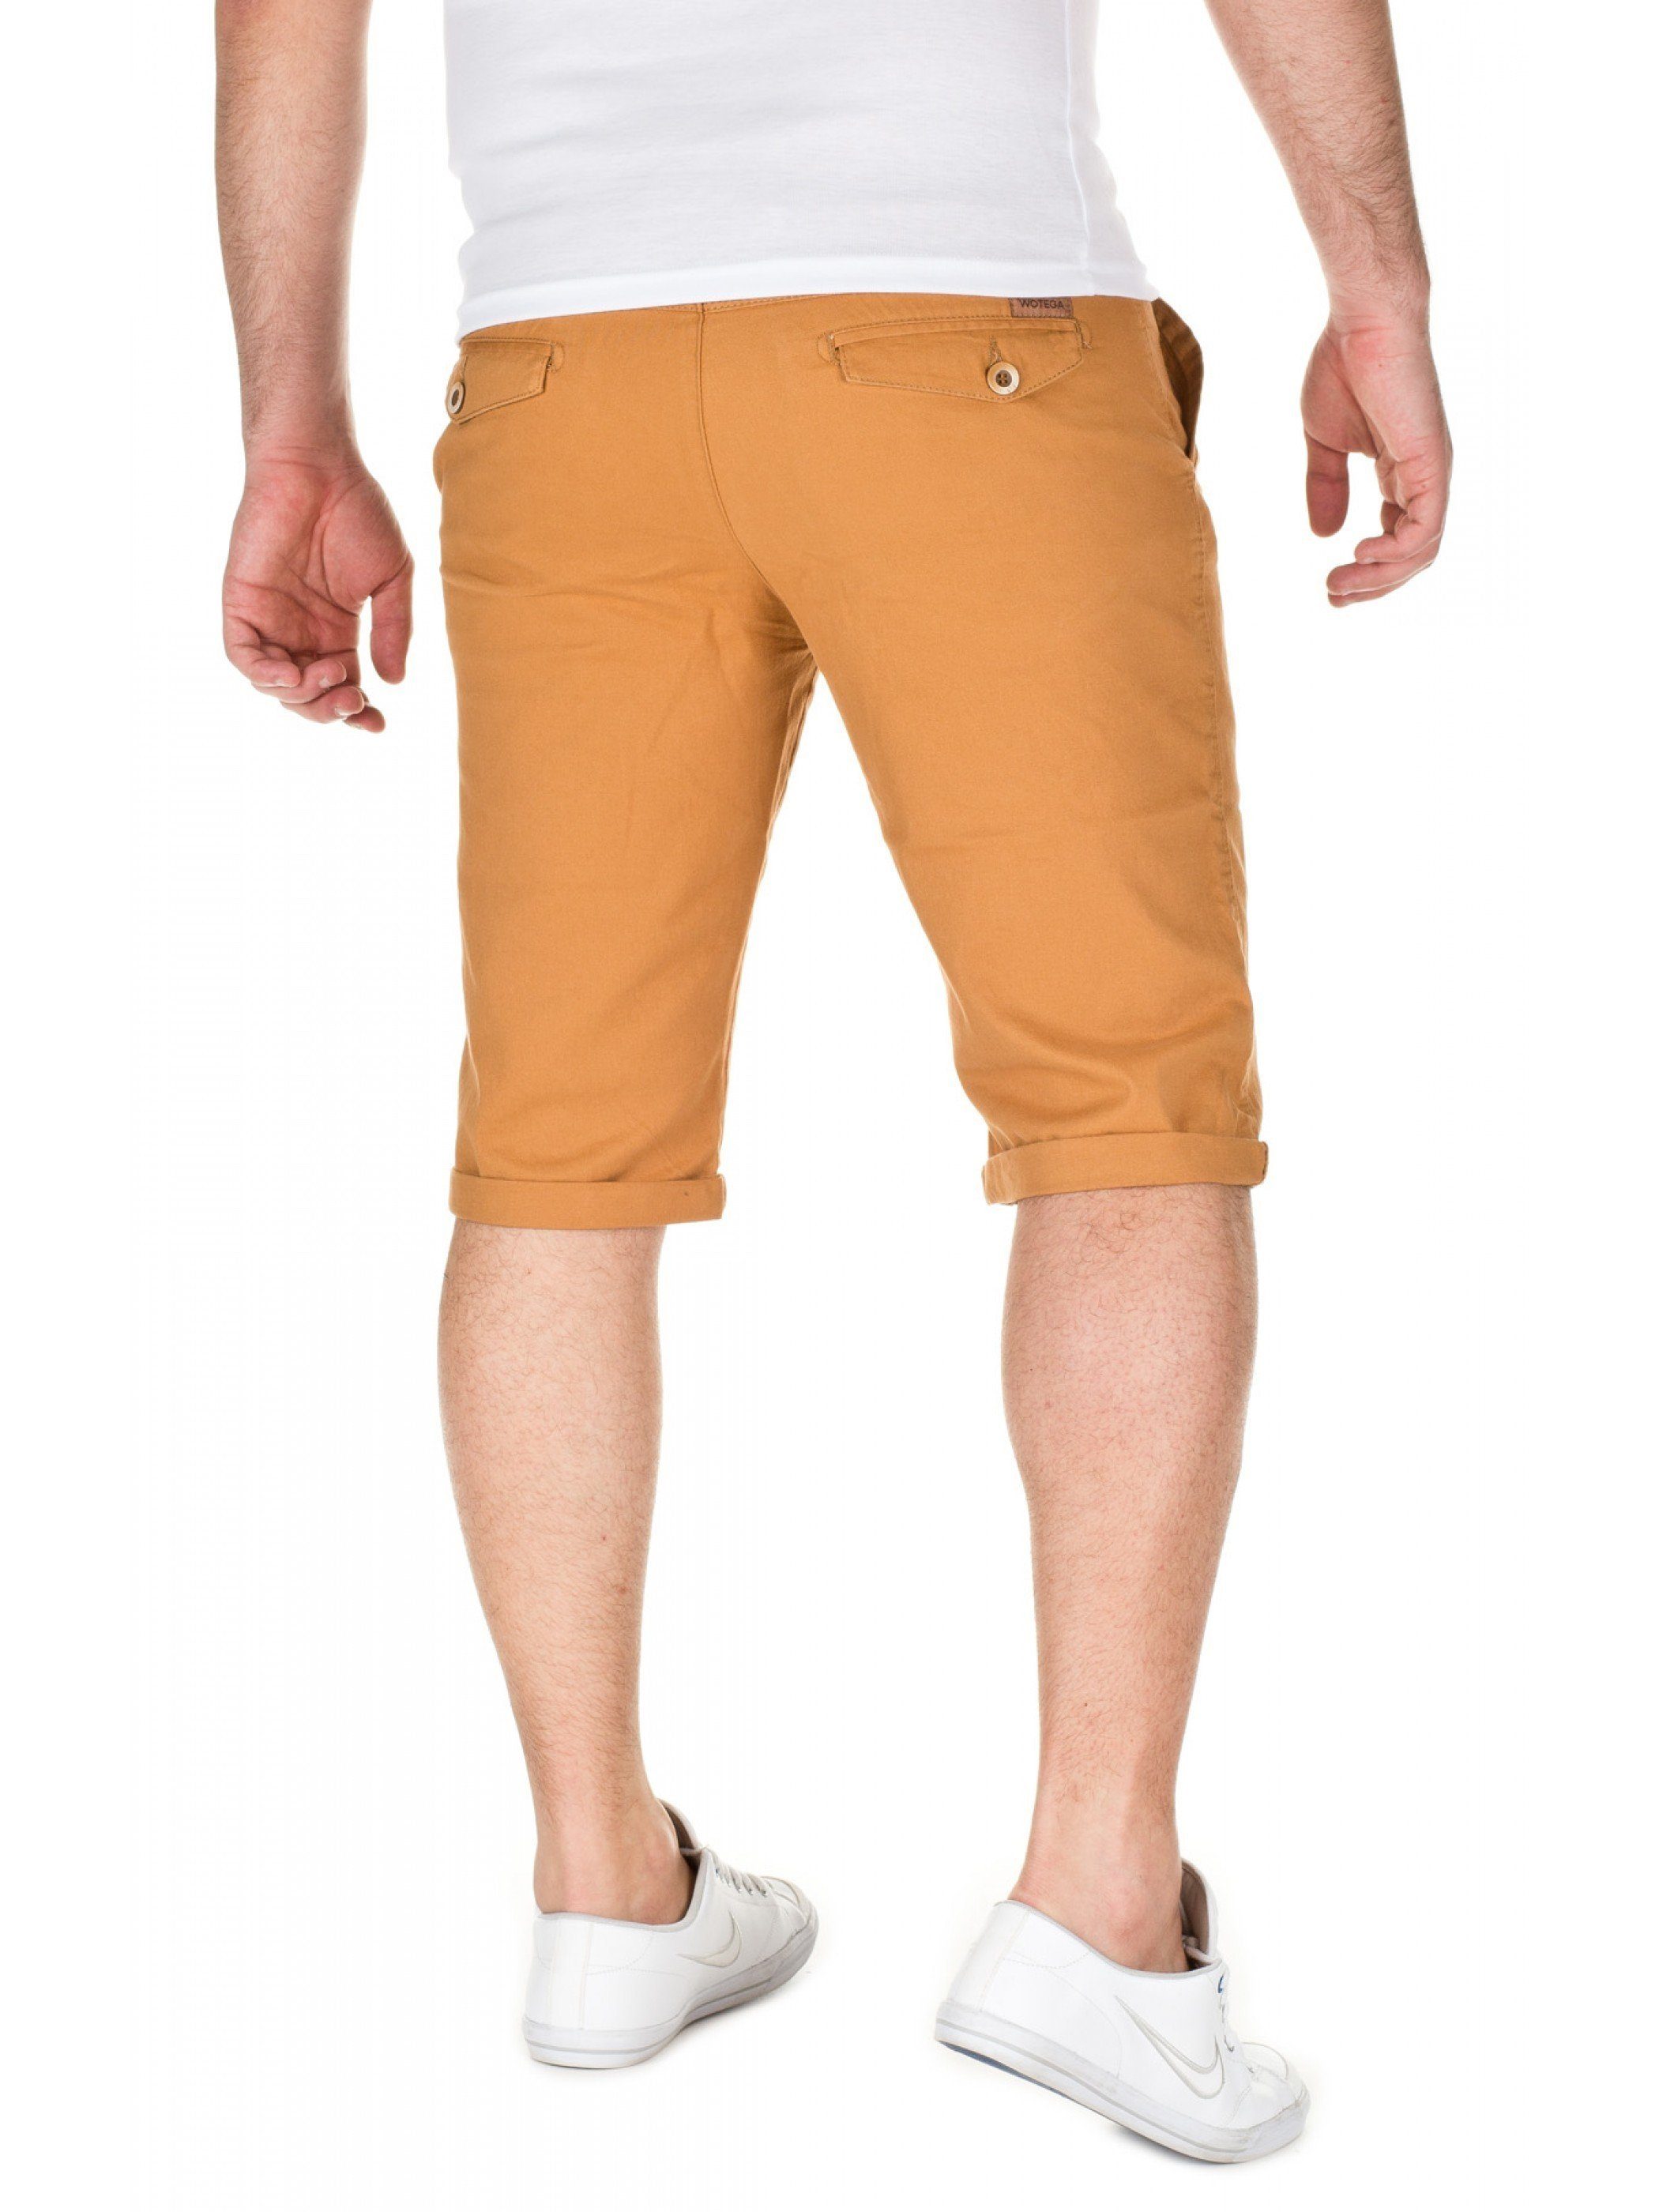 WOTEGA Shorts gold Alex - shorts (mustard WOTEGA Chino 82295) in Unifarbe Goldfarben